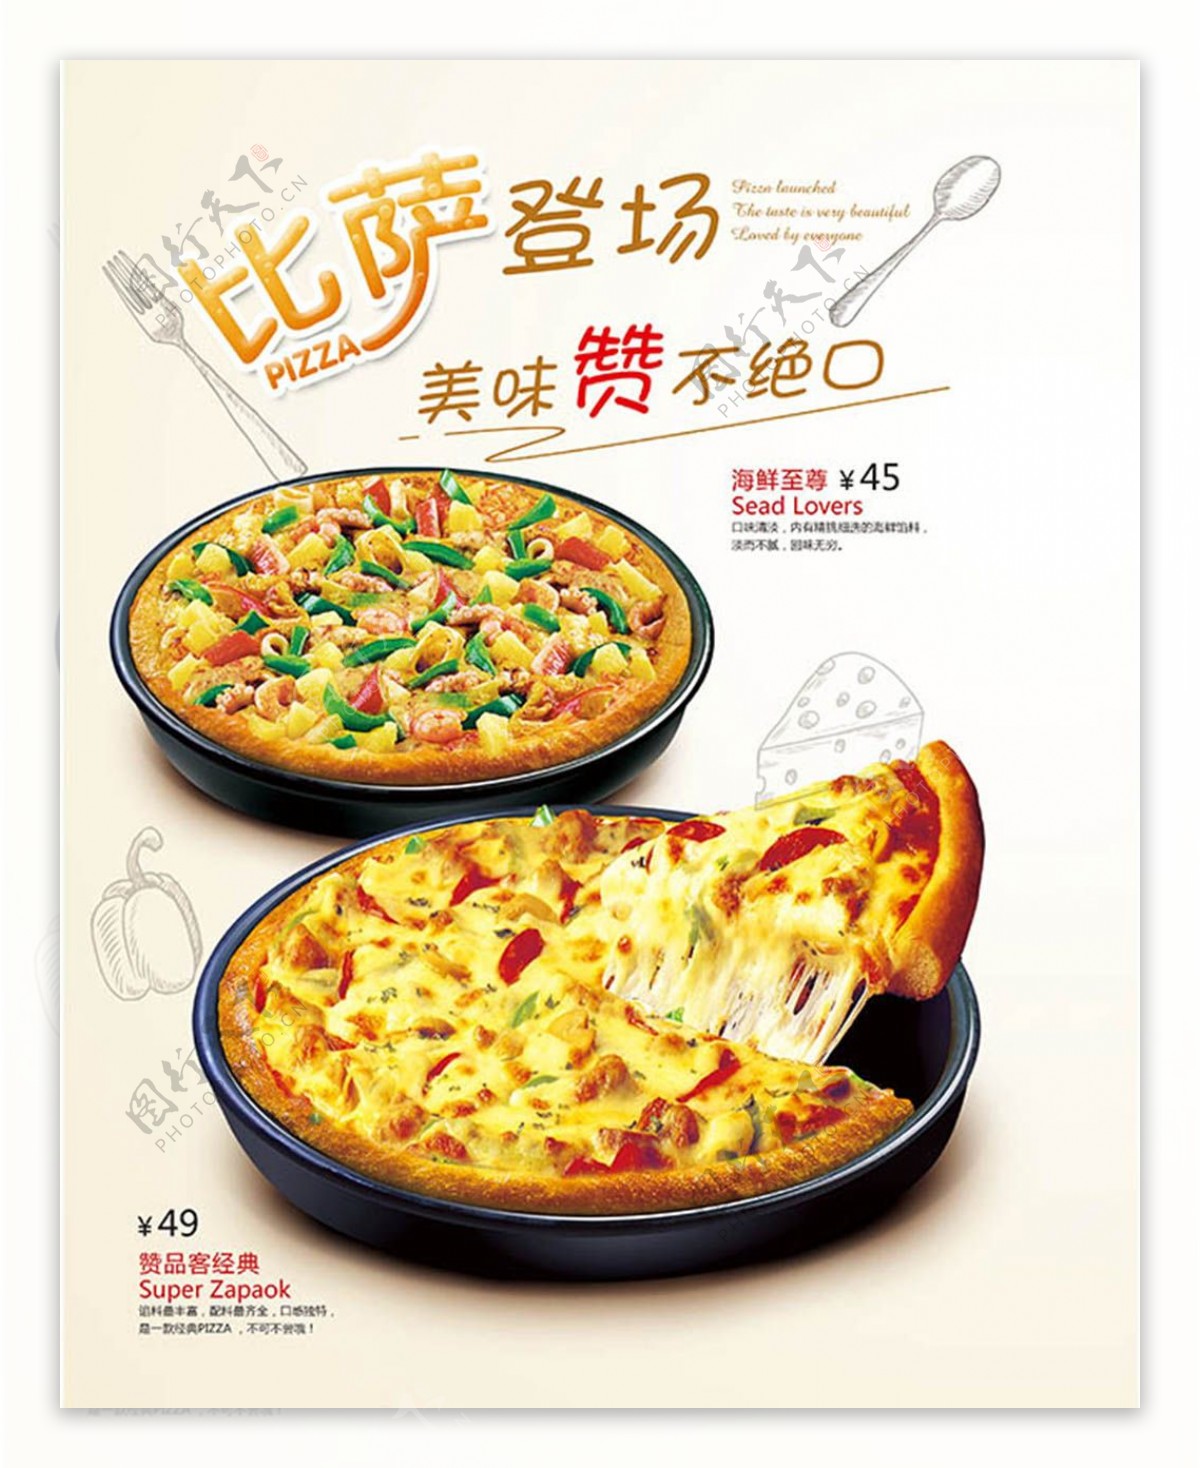 披萨登场美味赞不绝口美食图片海报